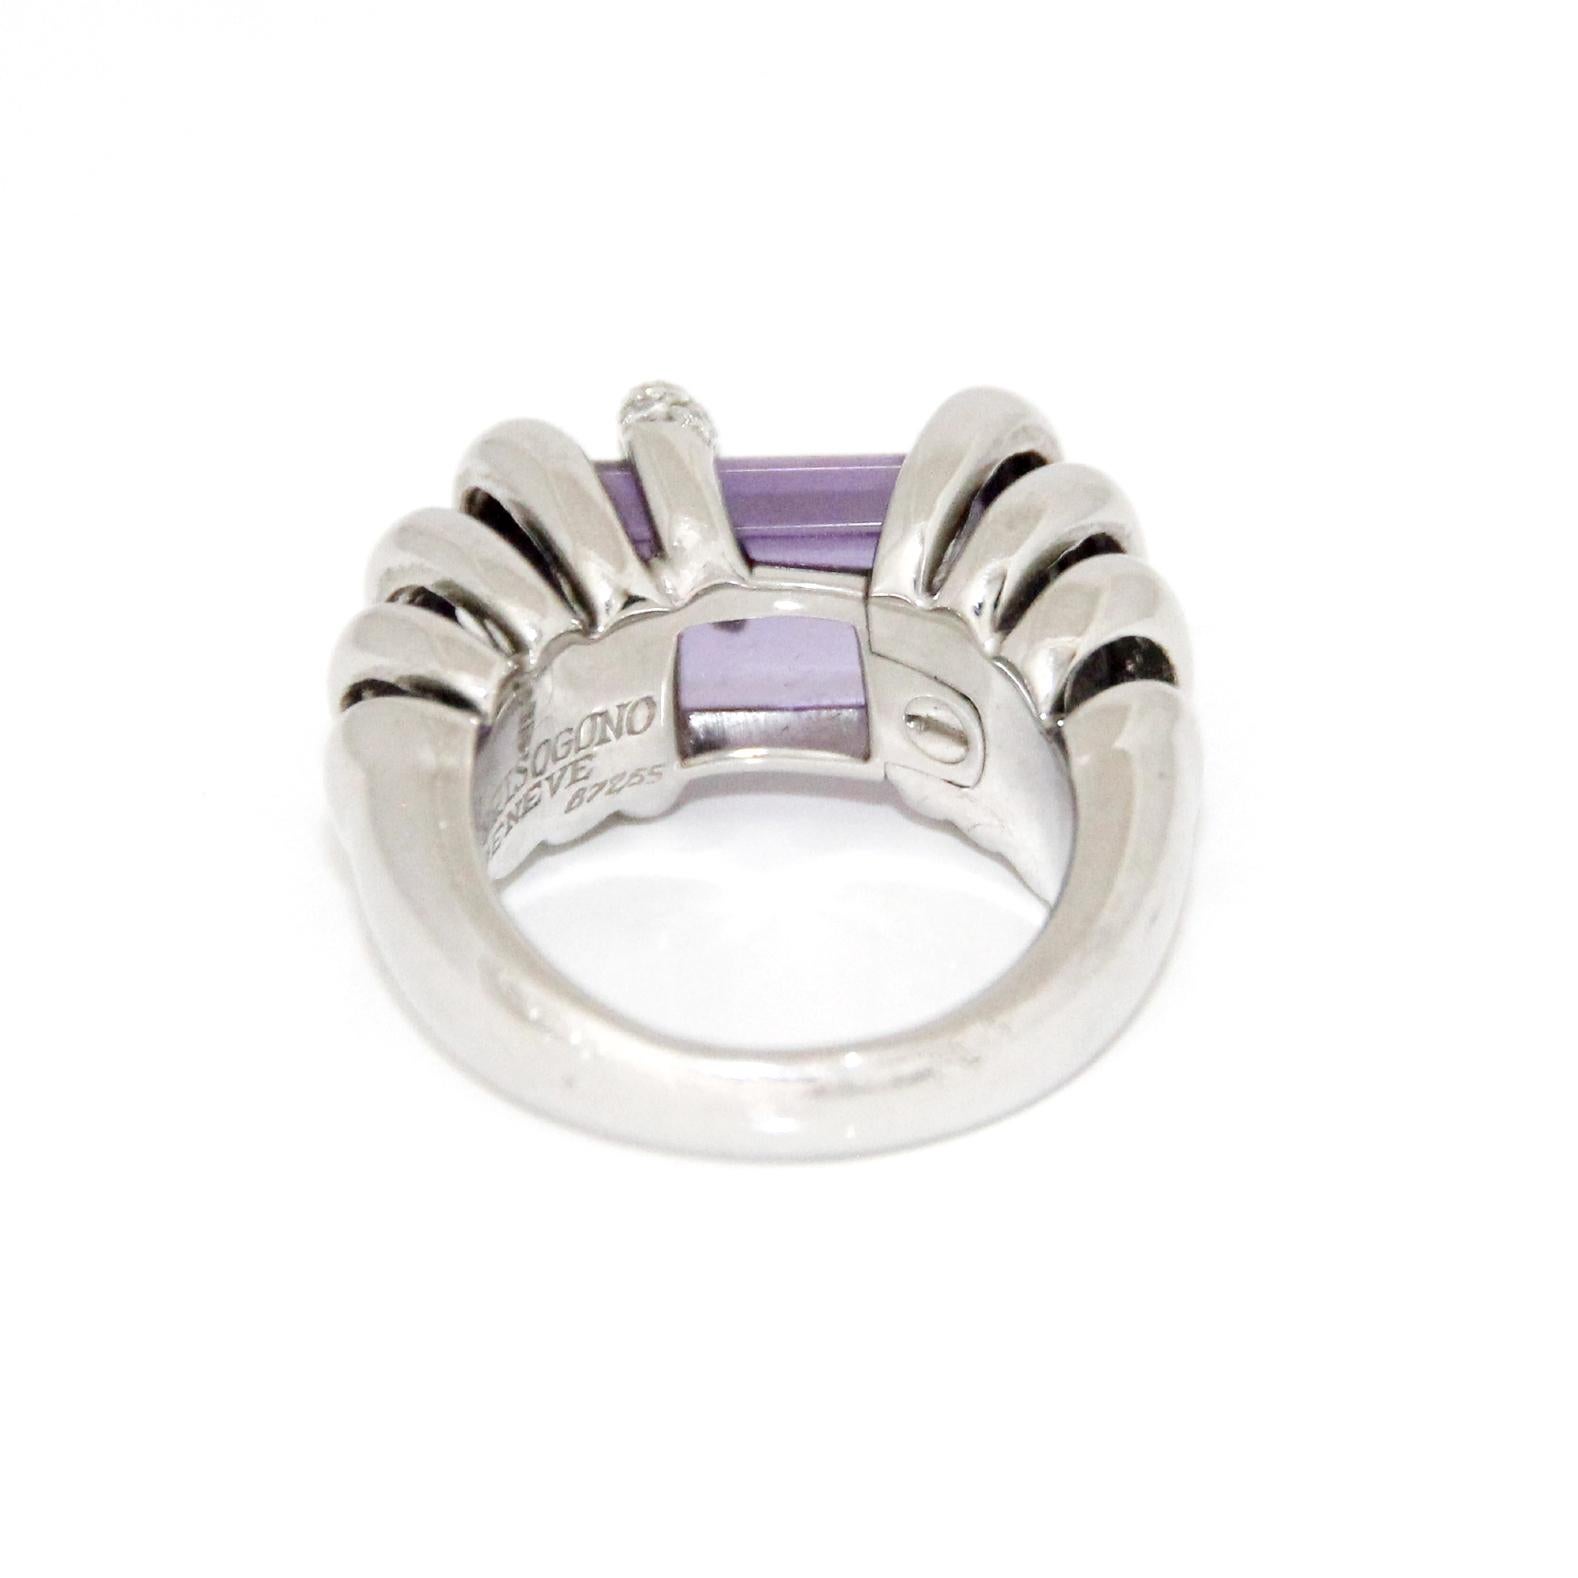 Brilliant Cut De Grissogono Diamond Ring 18K White Gold For Sale